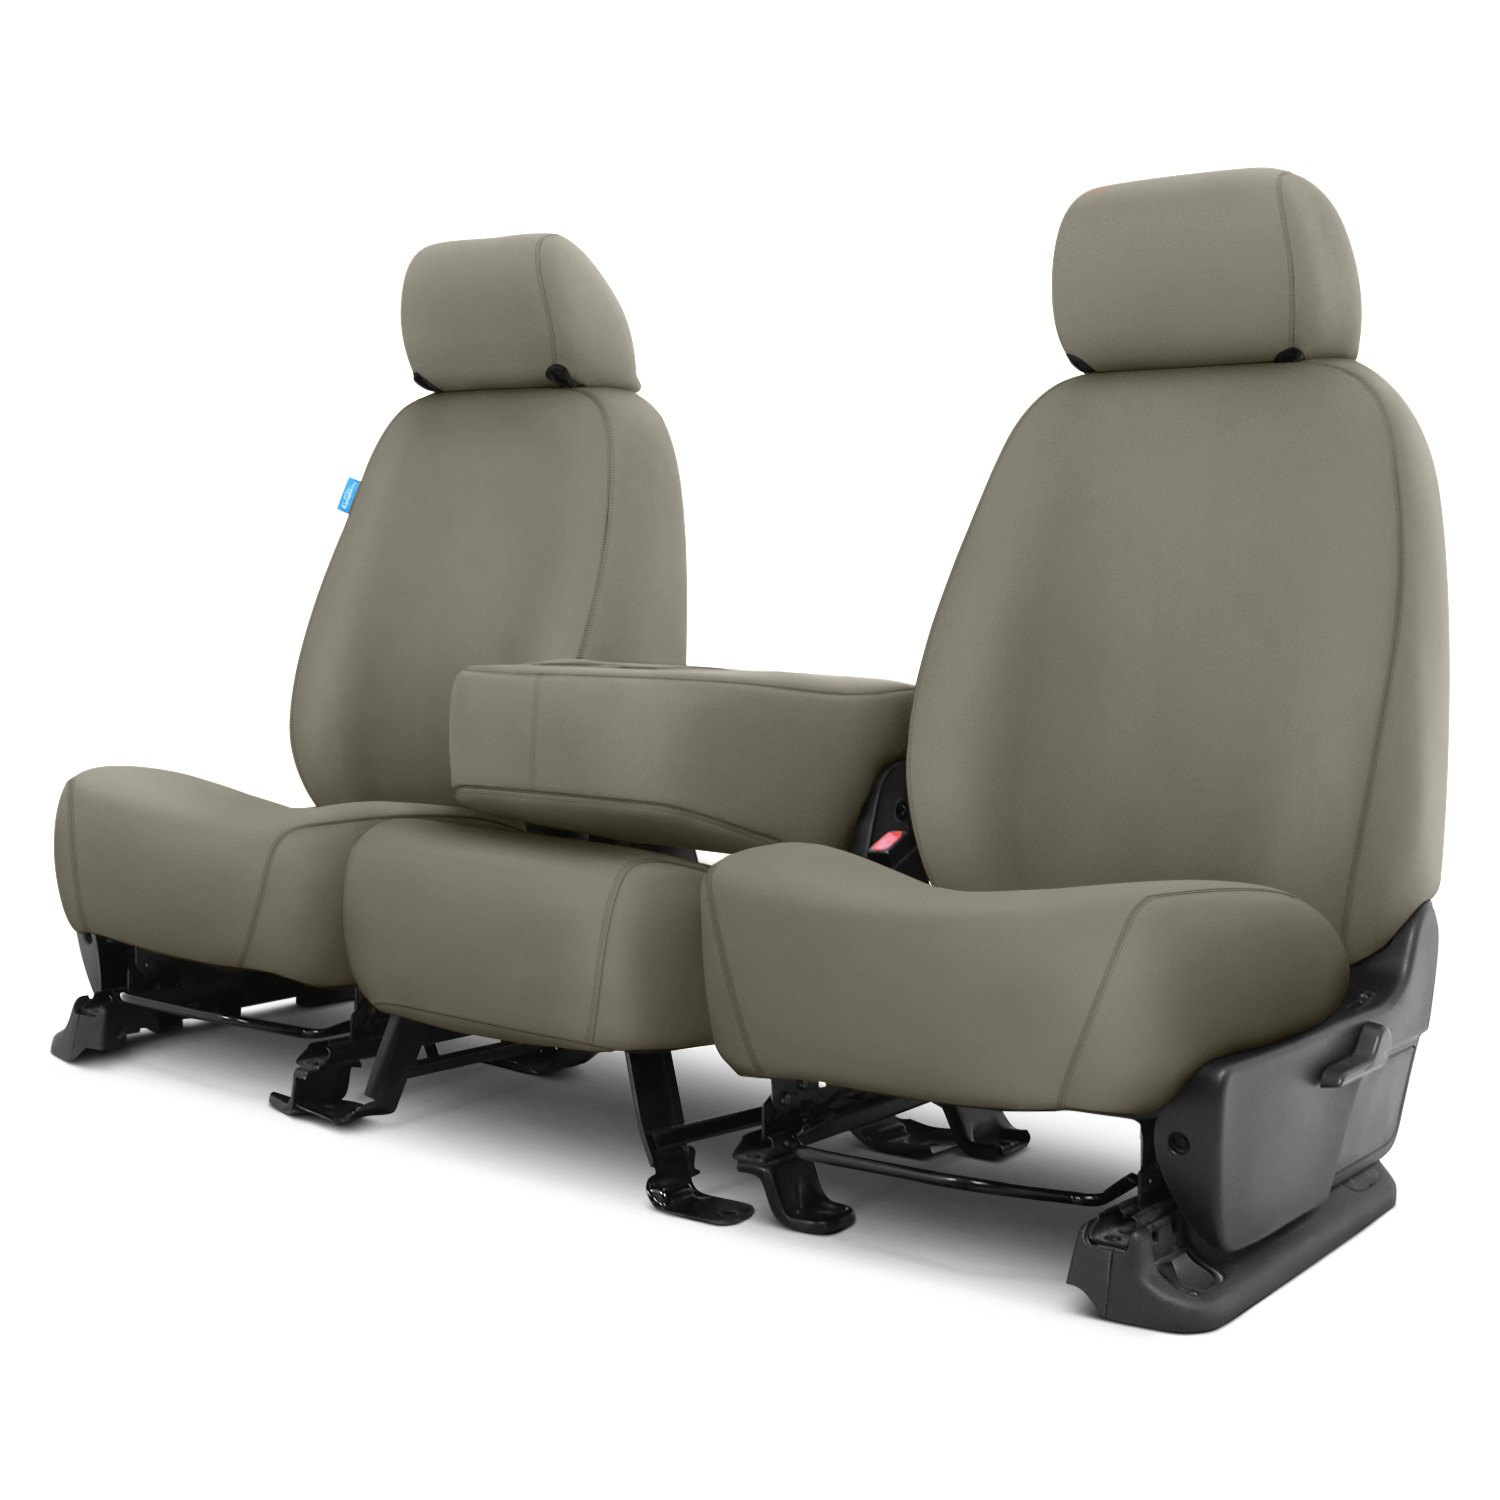 Covercraft® Ram 5500 2016 SeatSaver™ Polycotton Seat Covers